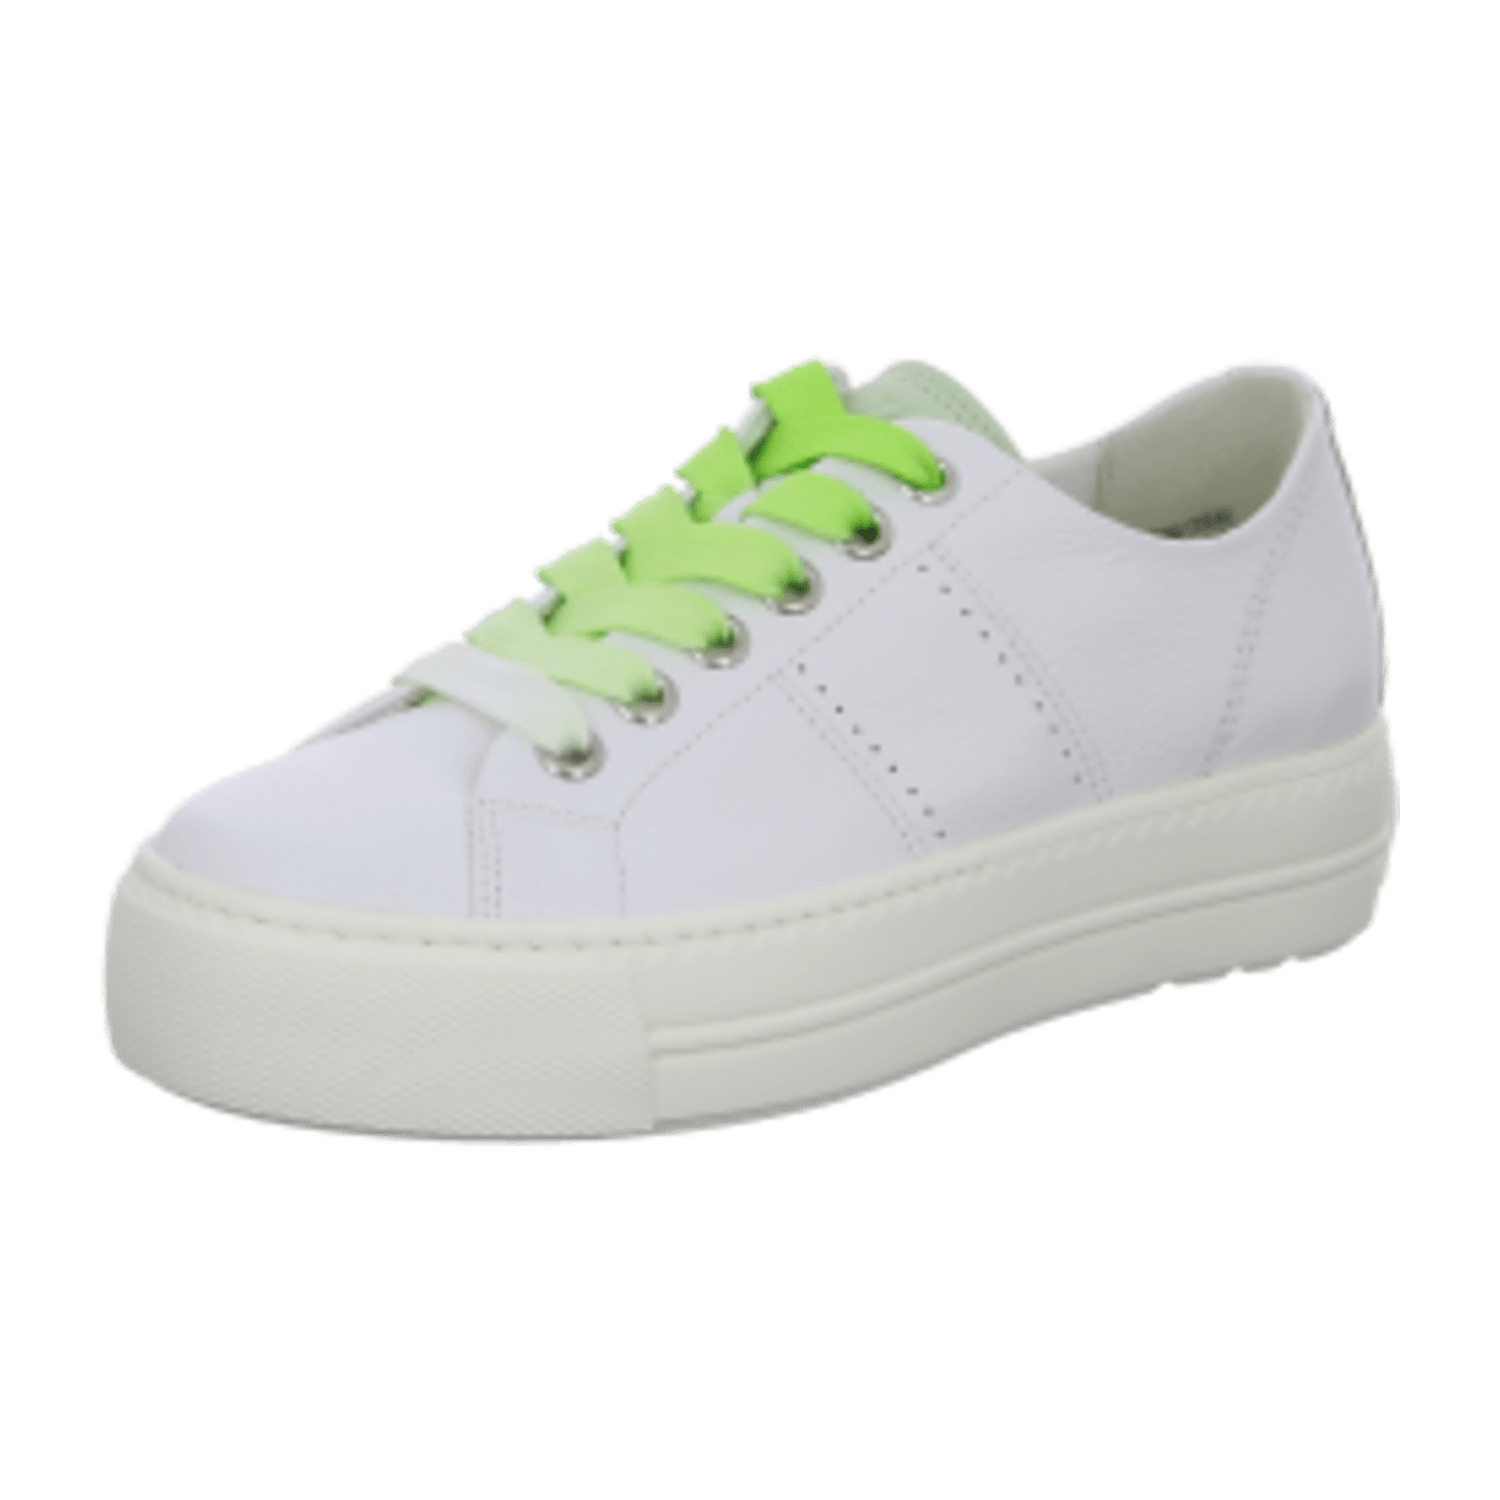 Paul Green Sneaker Schuhe weiß grün Nappa 5247